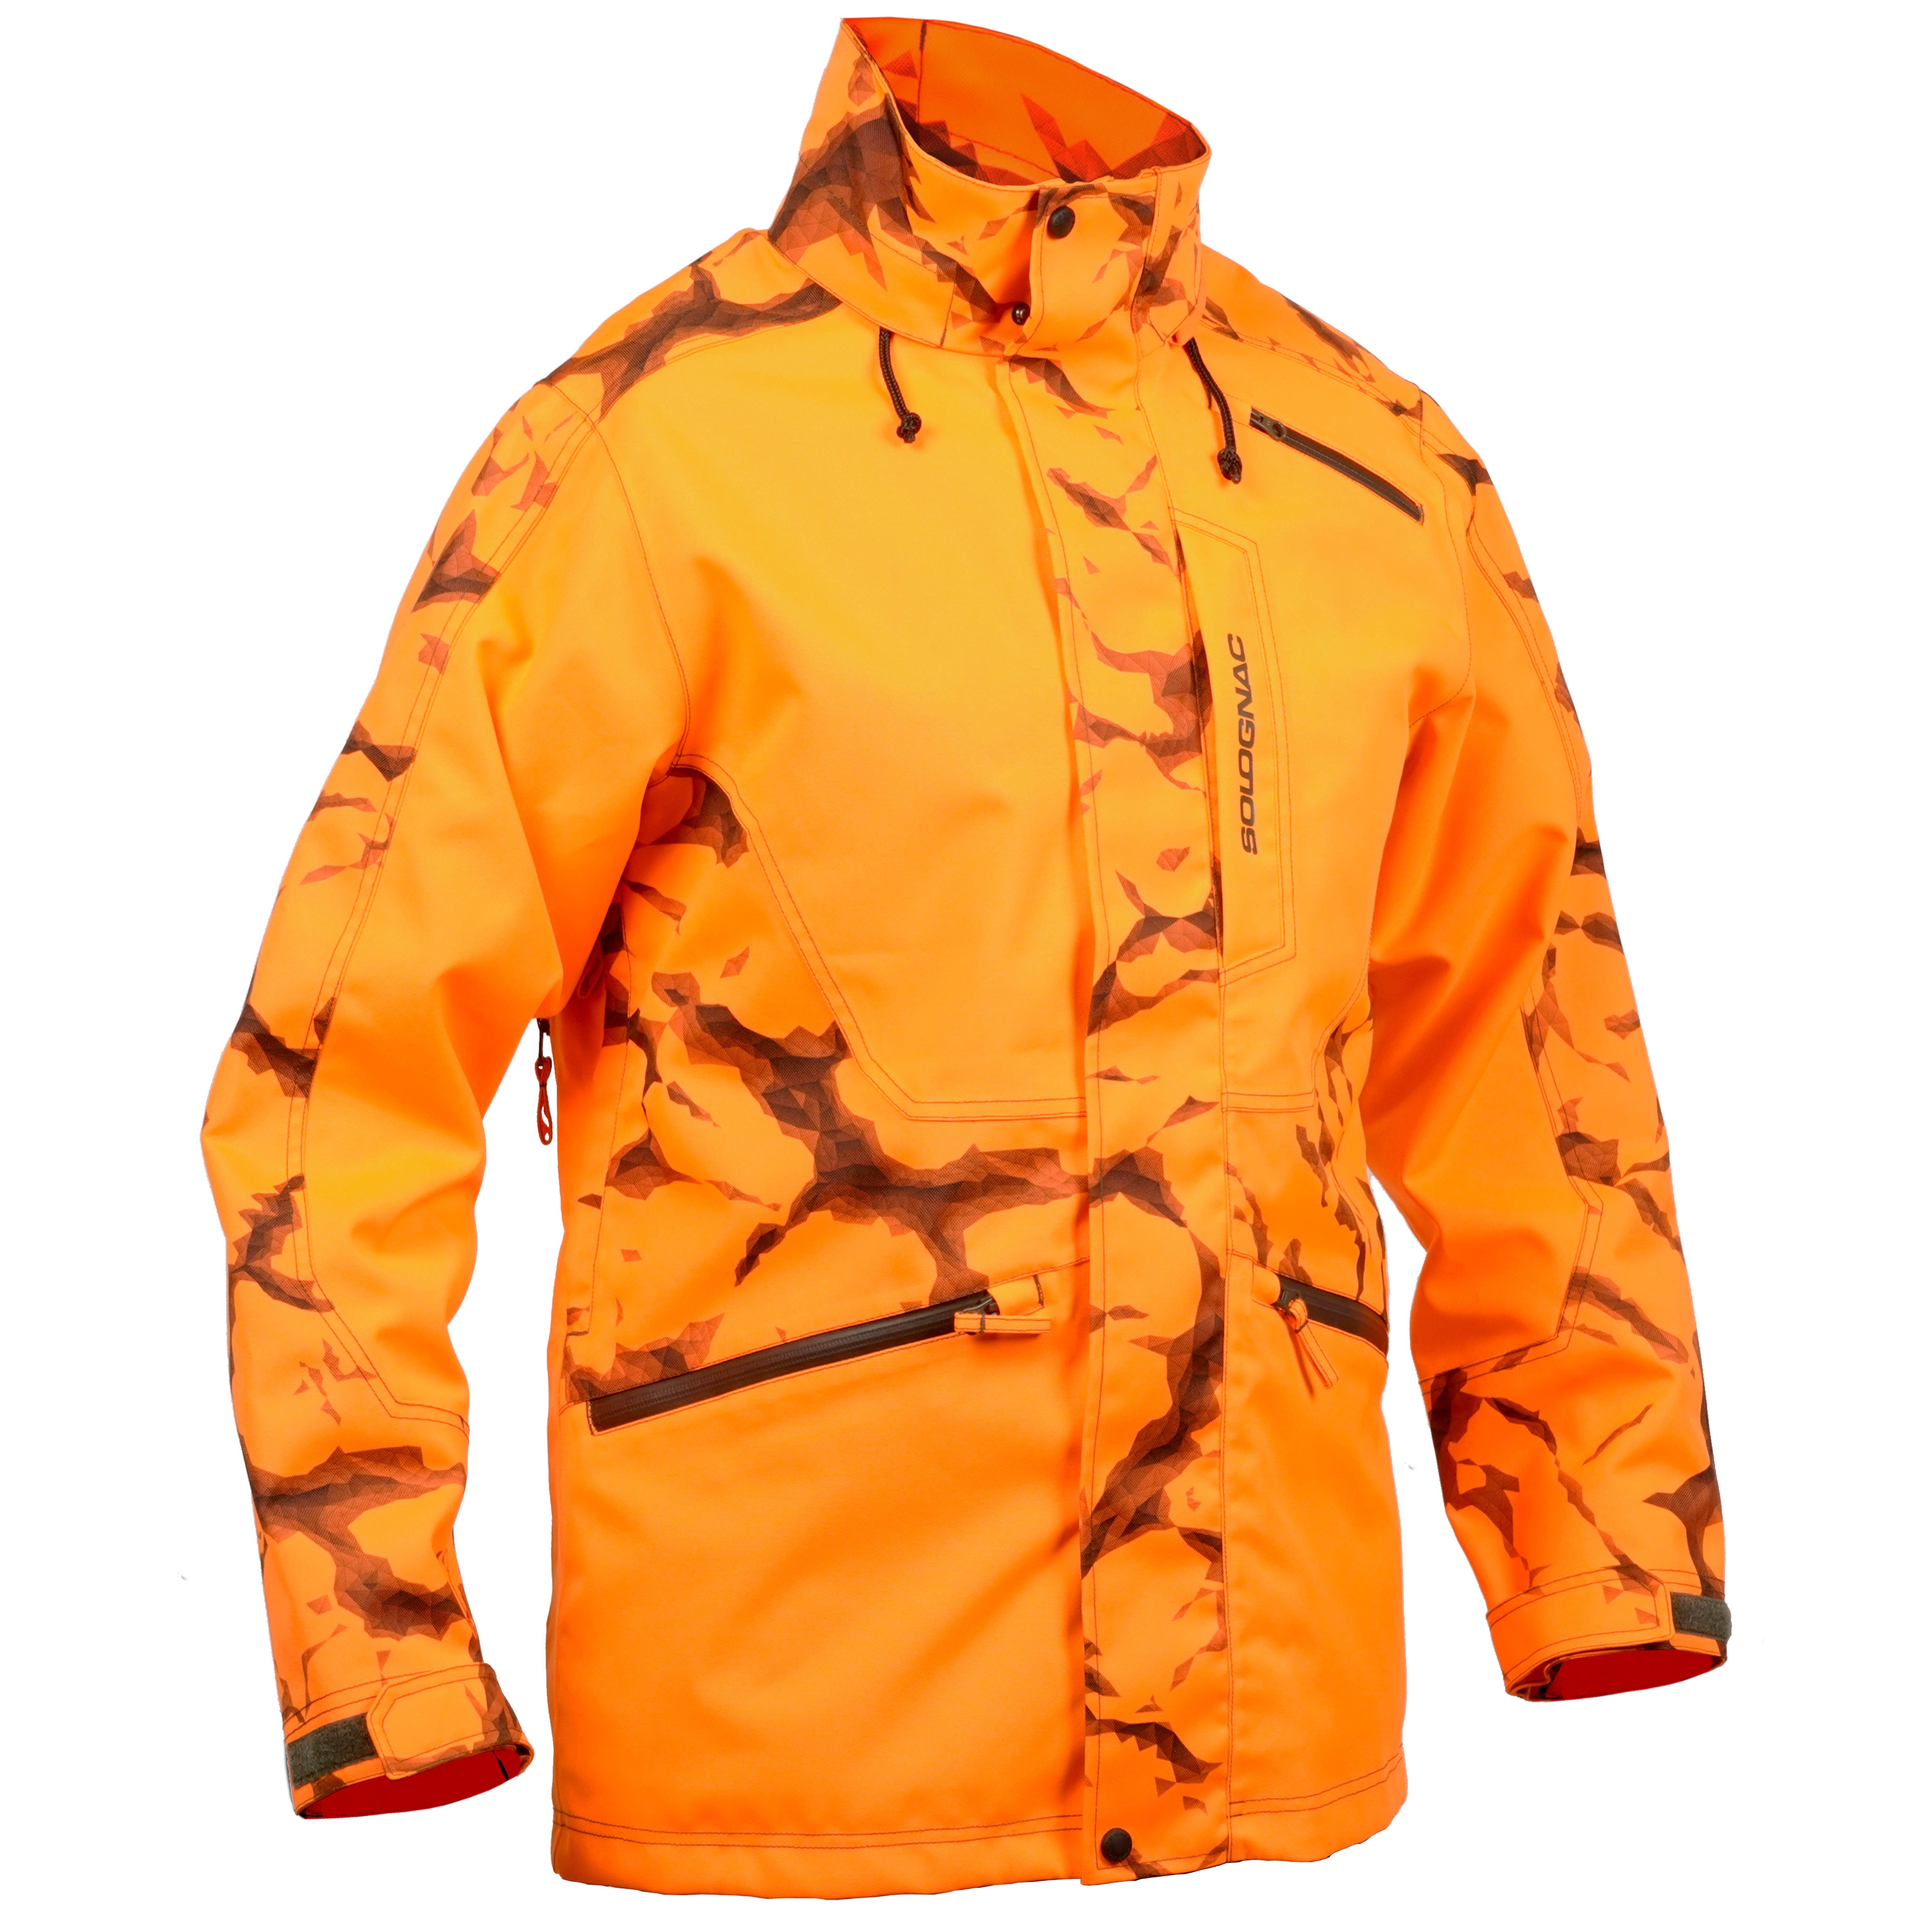 Jachetă 500 impermeabilă SUPERTRACK fluorescentă Bărbați La Oferta Online decathlon imagine La Oferta Online